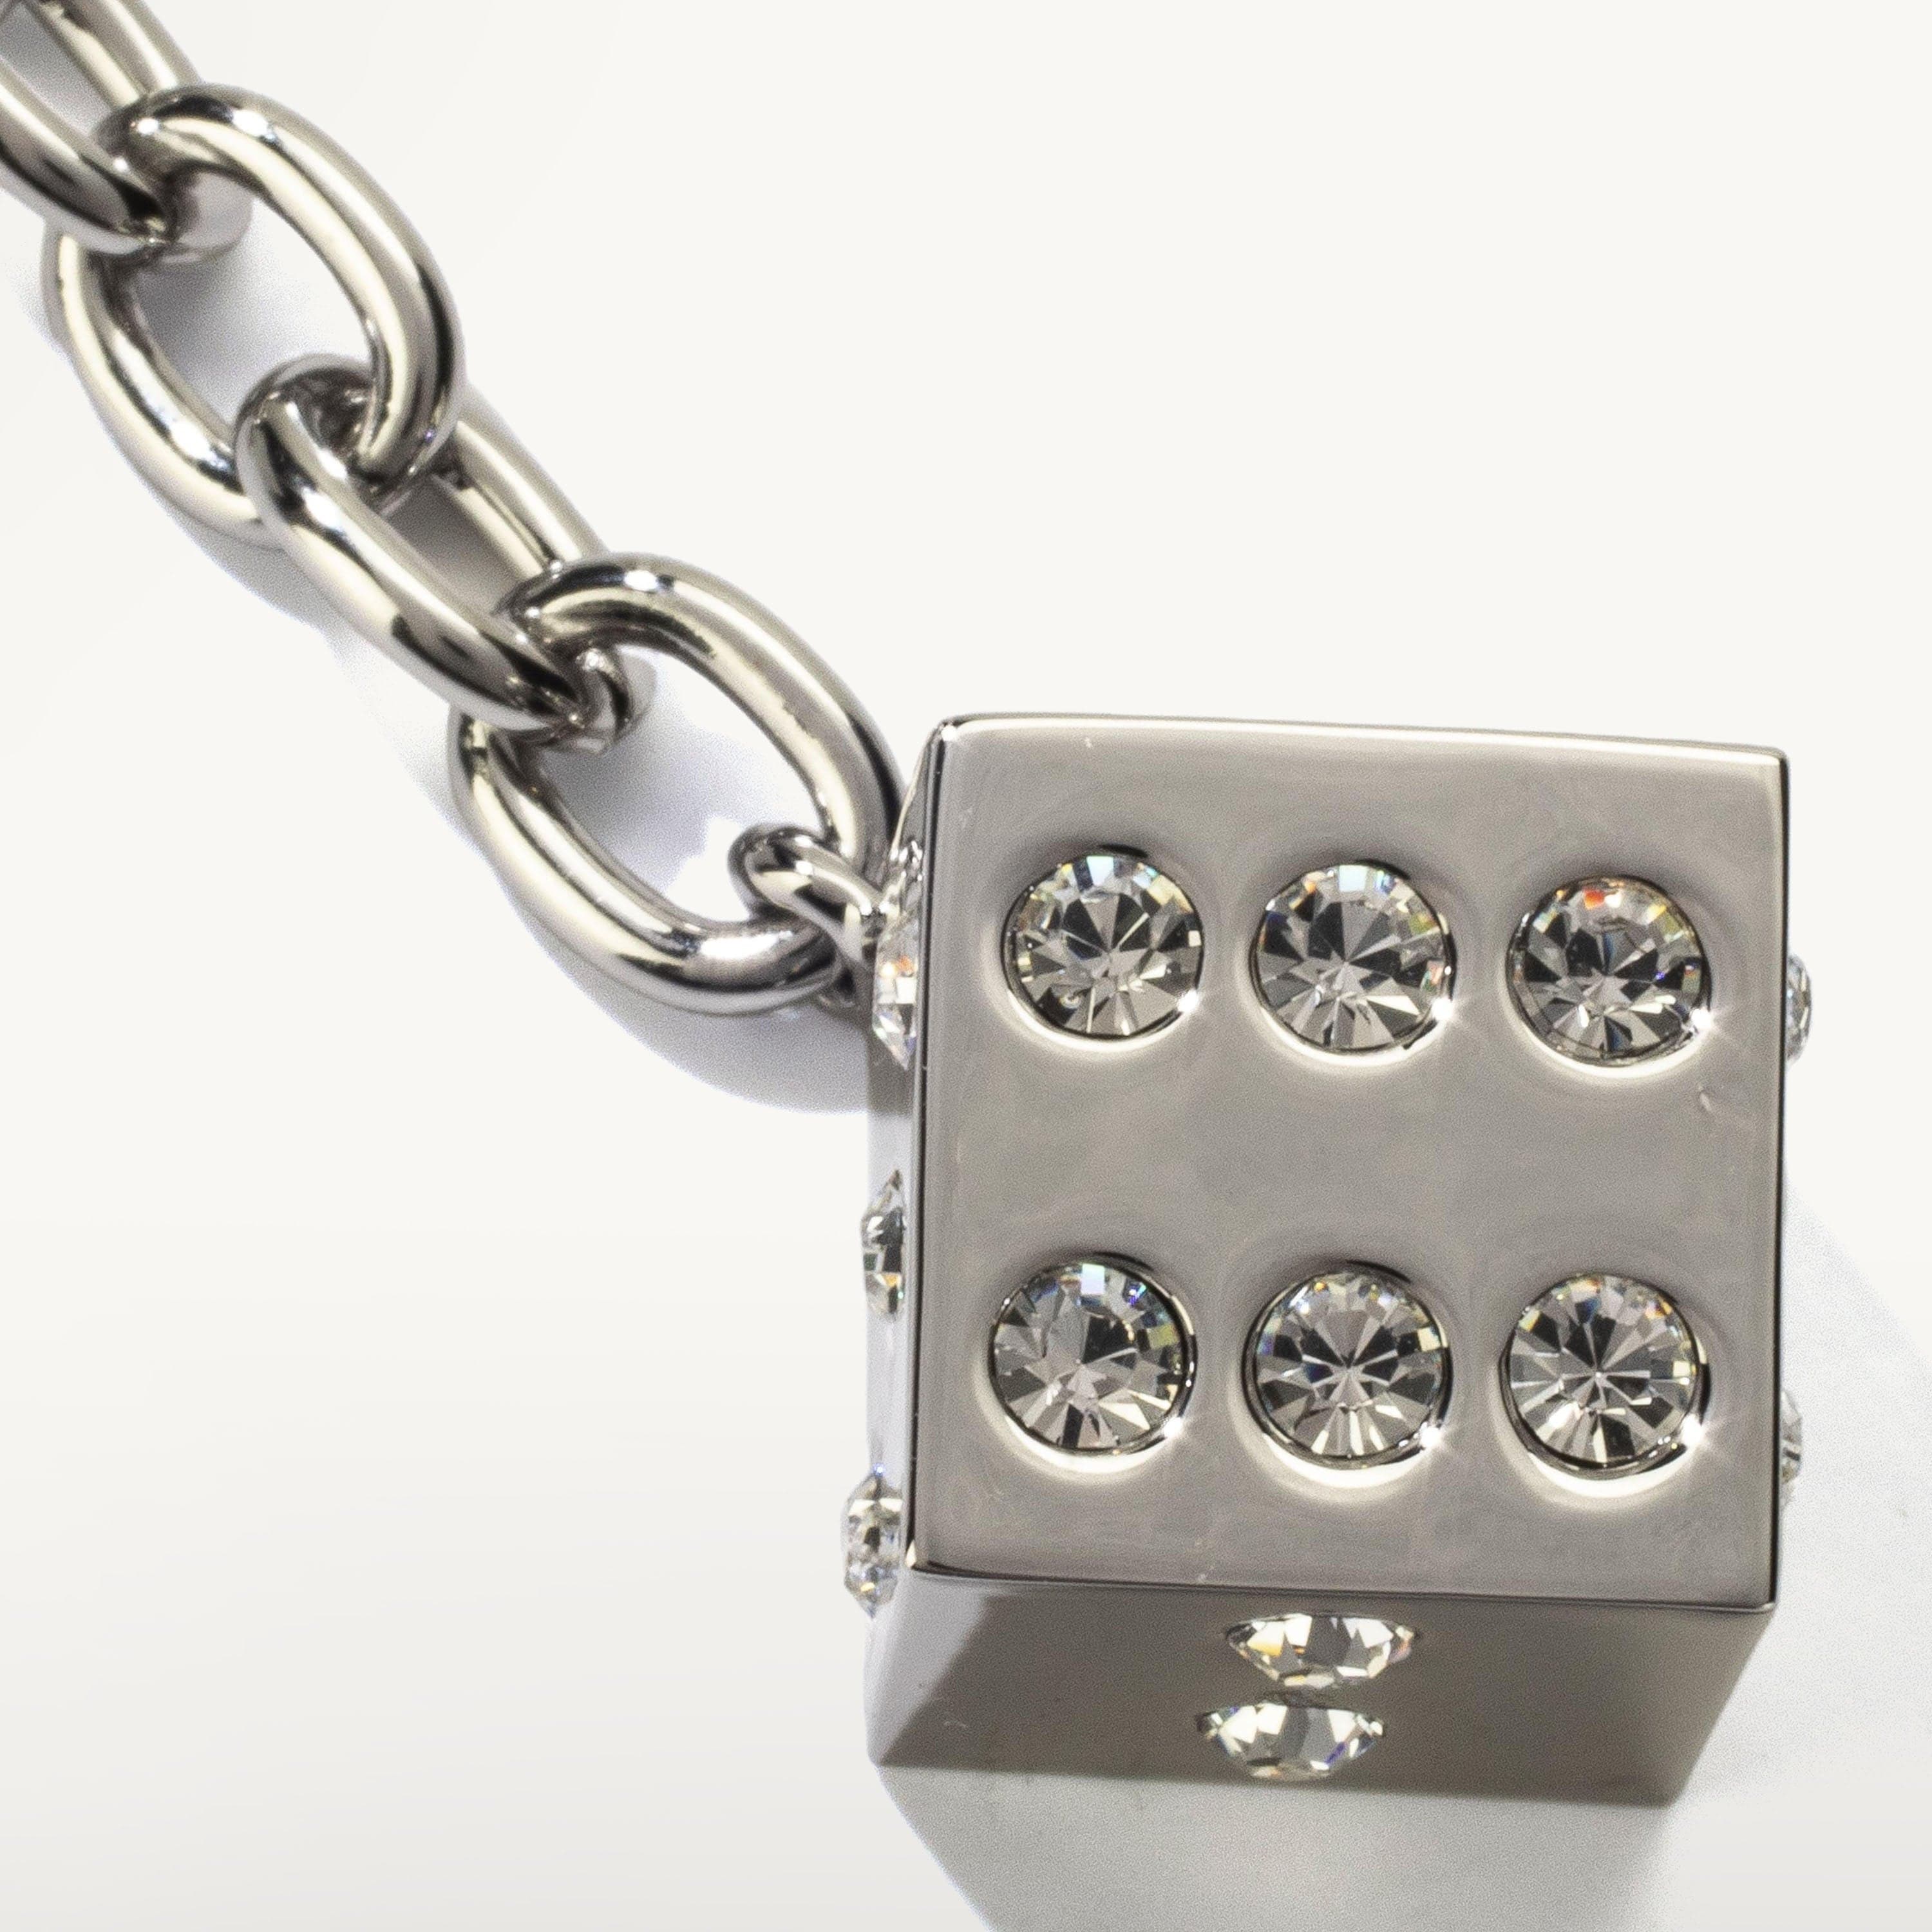 Kalifano Crystal Keychains Rose Slipper Keychain made with Swarovski Crystals SKC-077